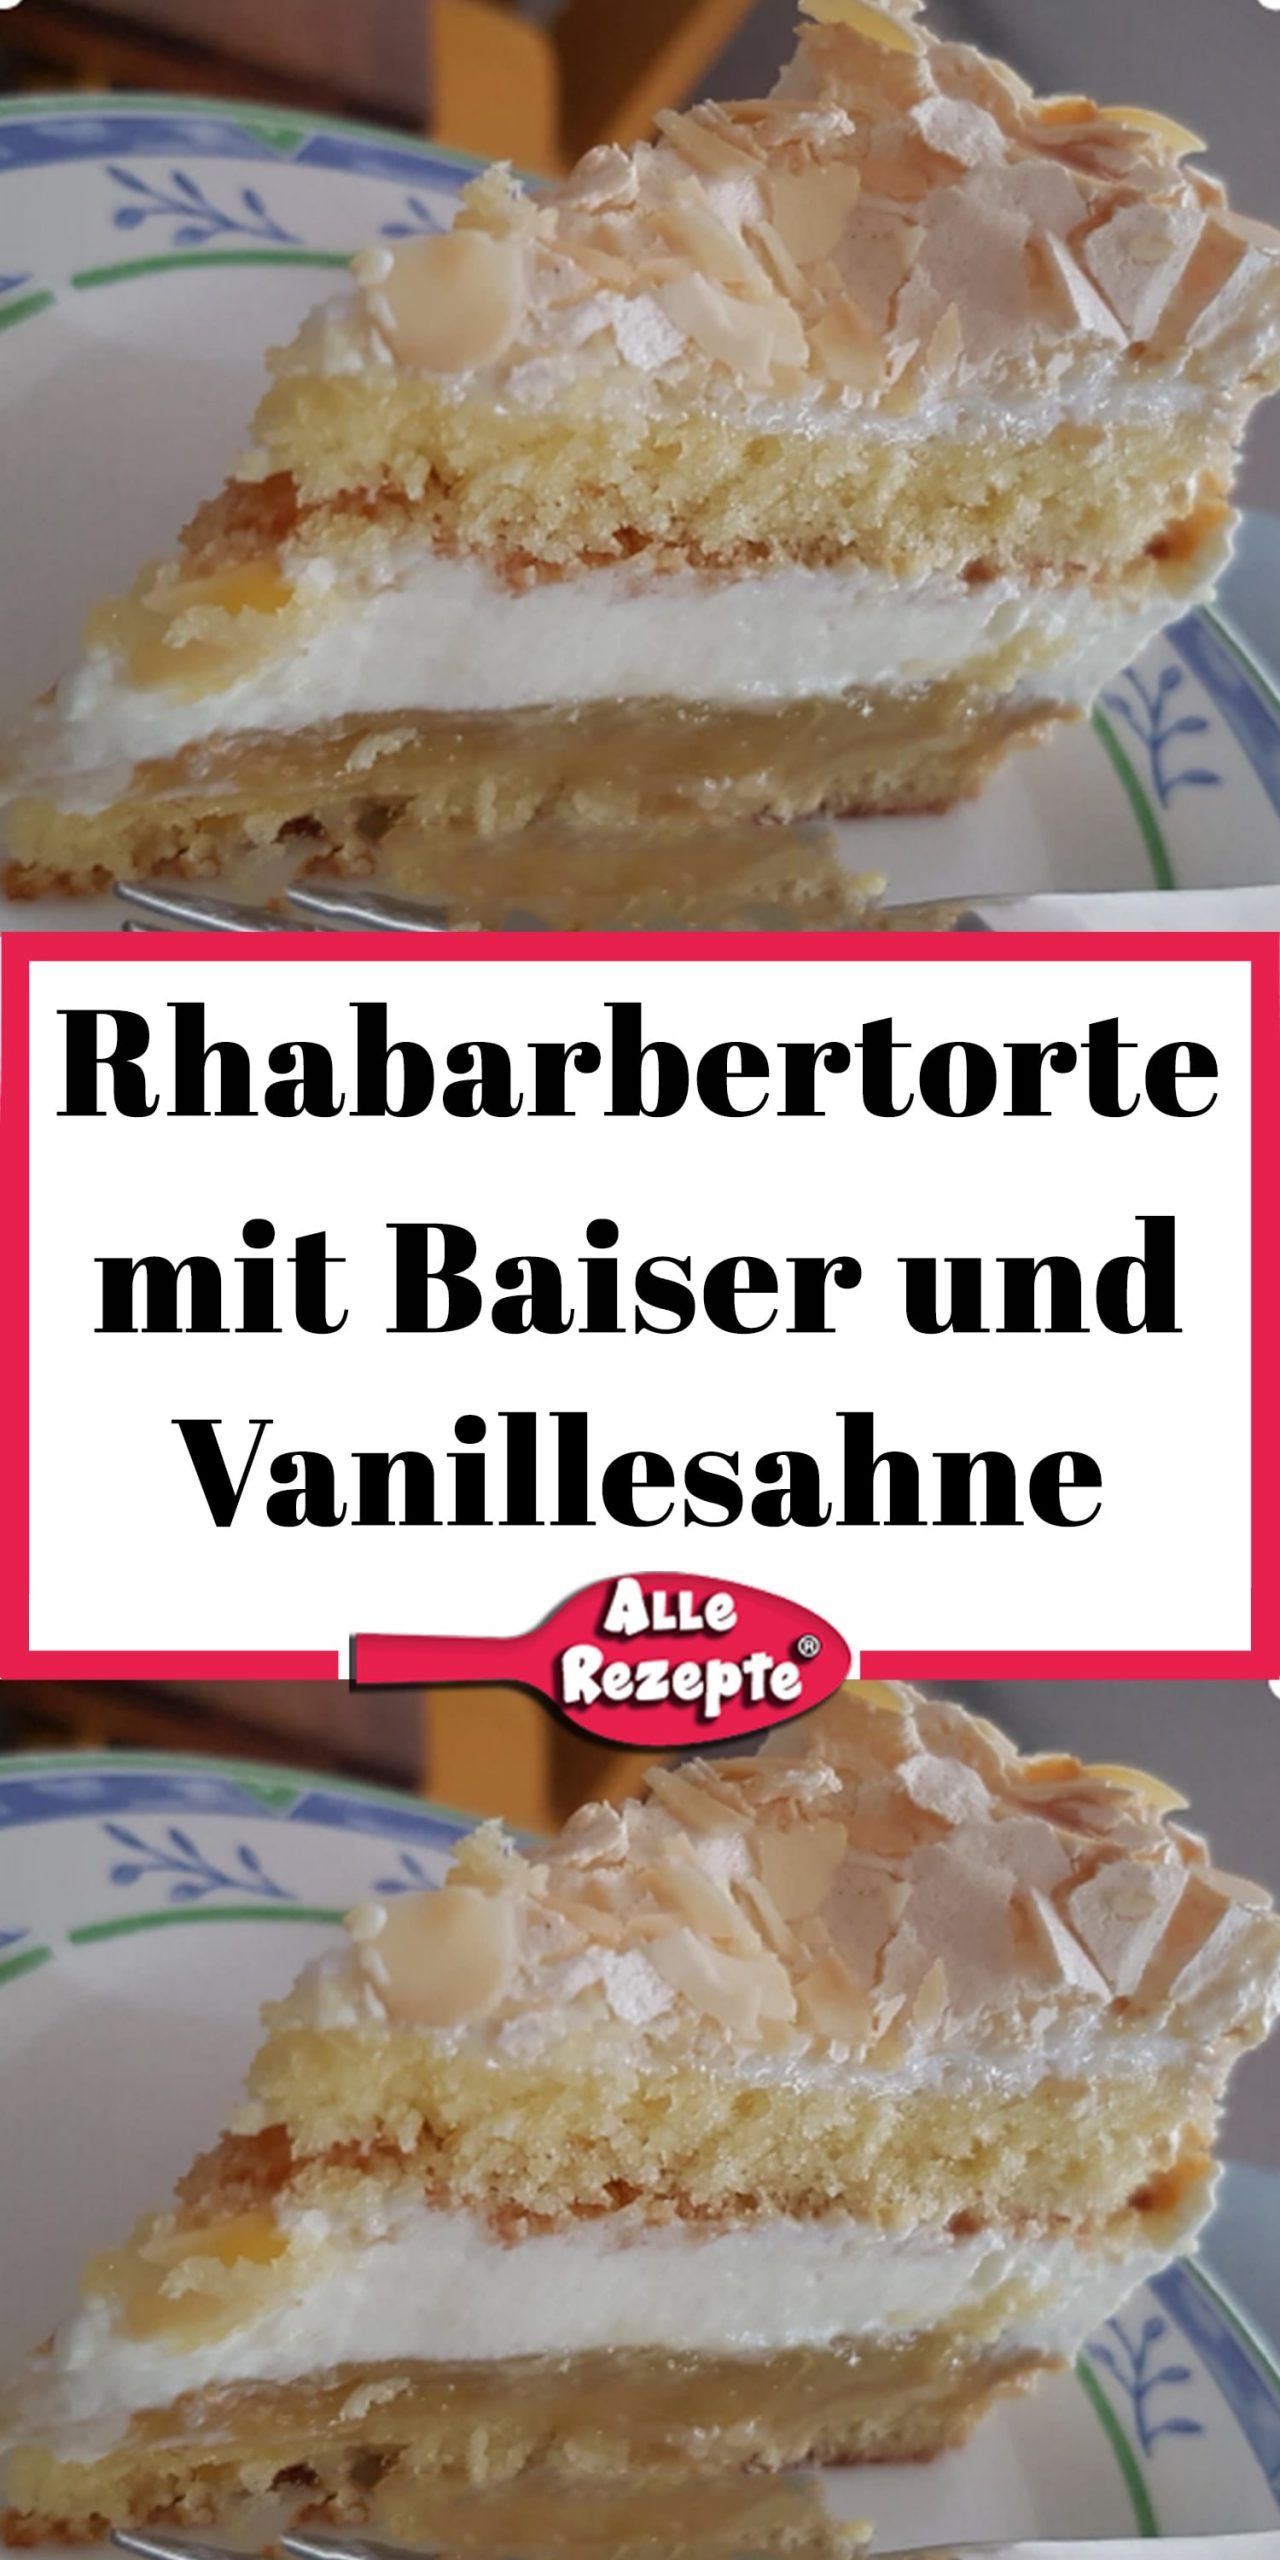 Rhabarbertorte mit Baiser und Vanillesahne - Alle Rezepte